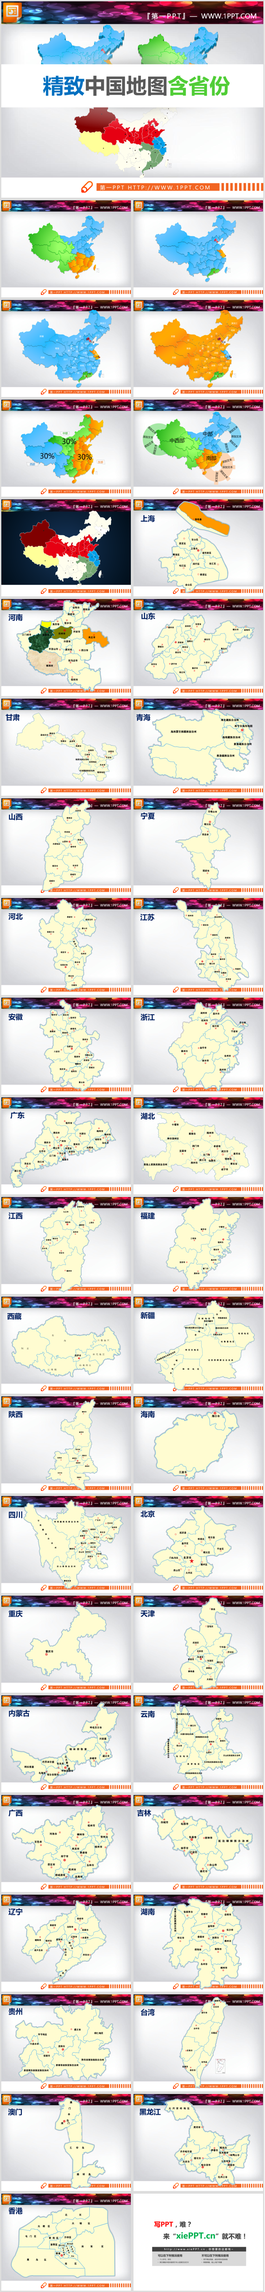 超级完整详细的包含各省份的中国地图PPT模板图表素材